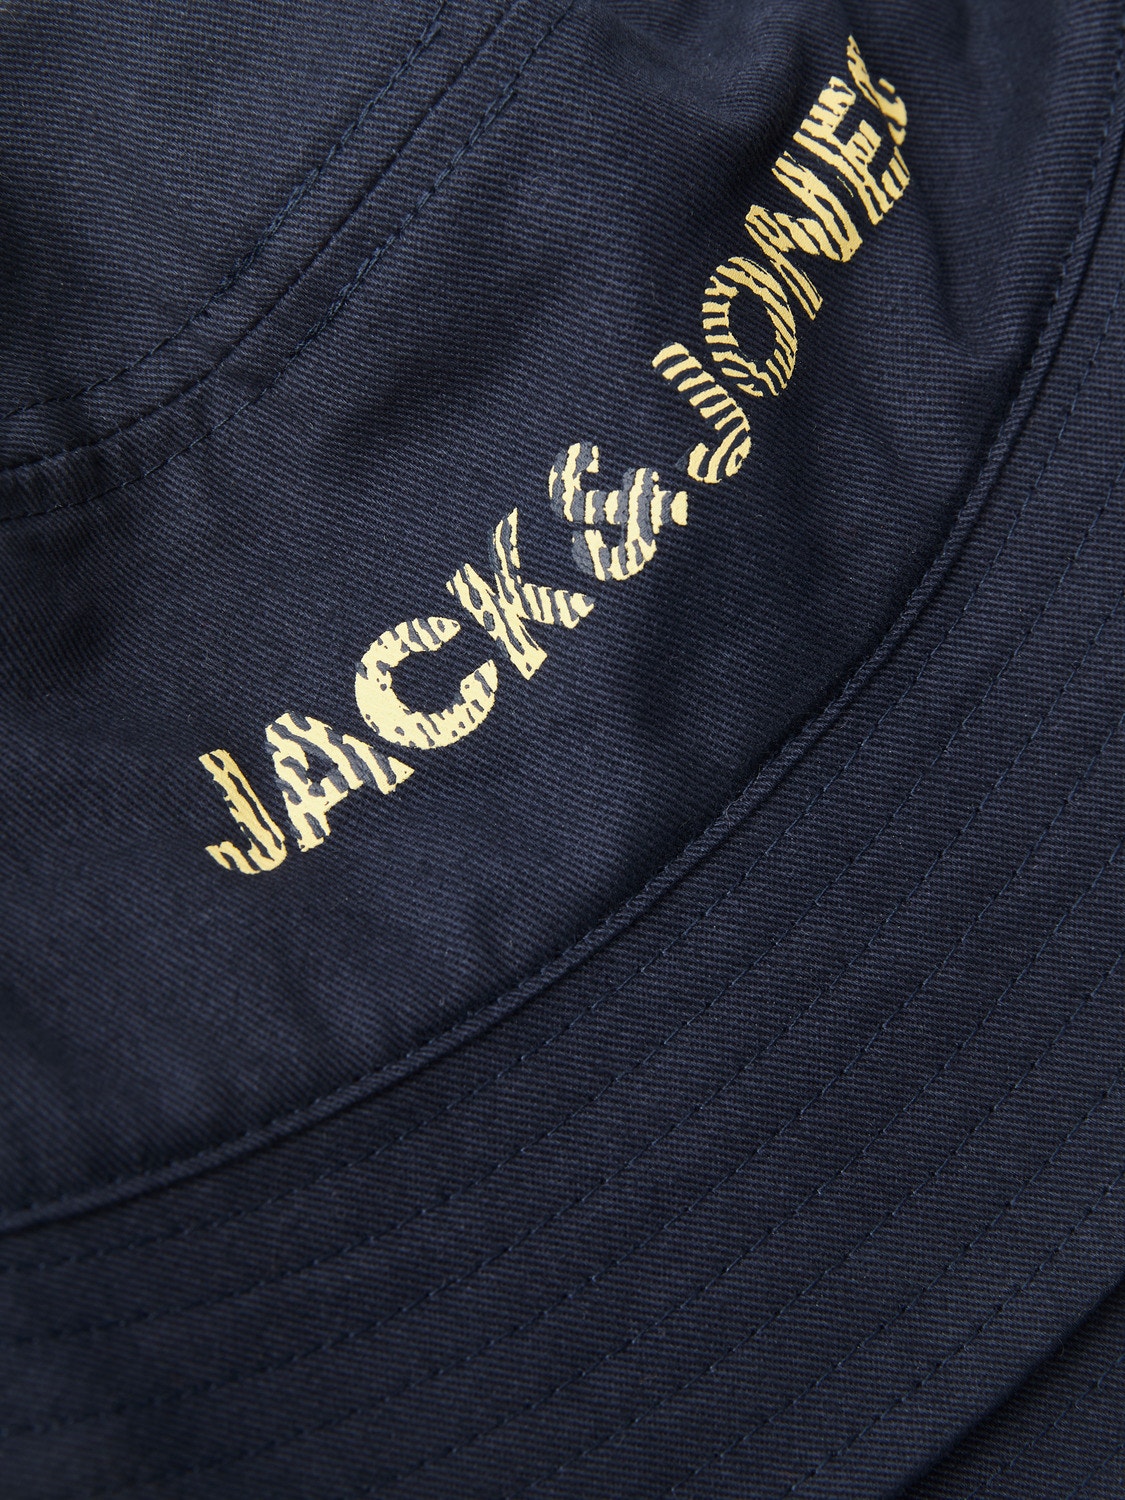 Jack & Jones Kapelusz bucket -Navy Blazer - 12235410